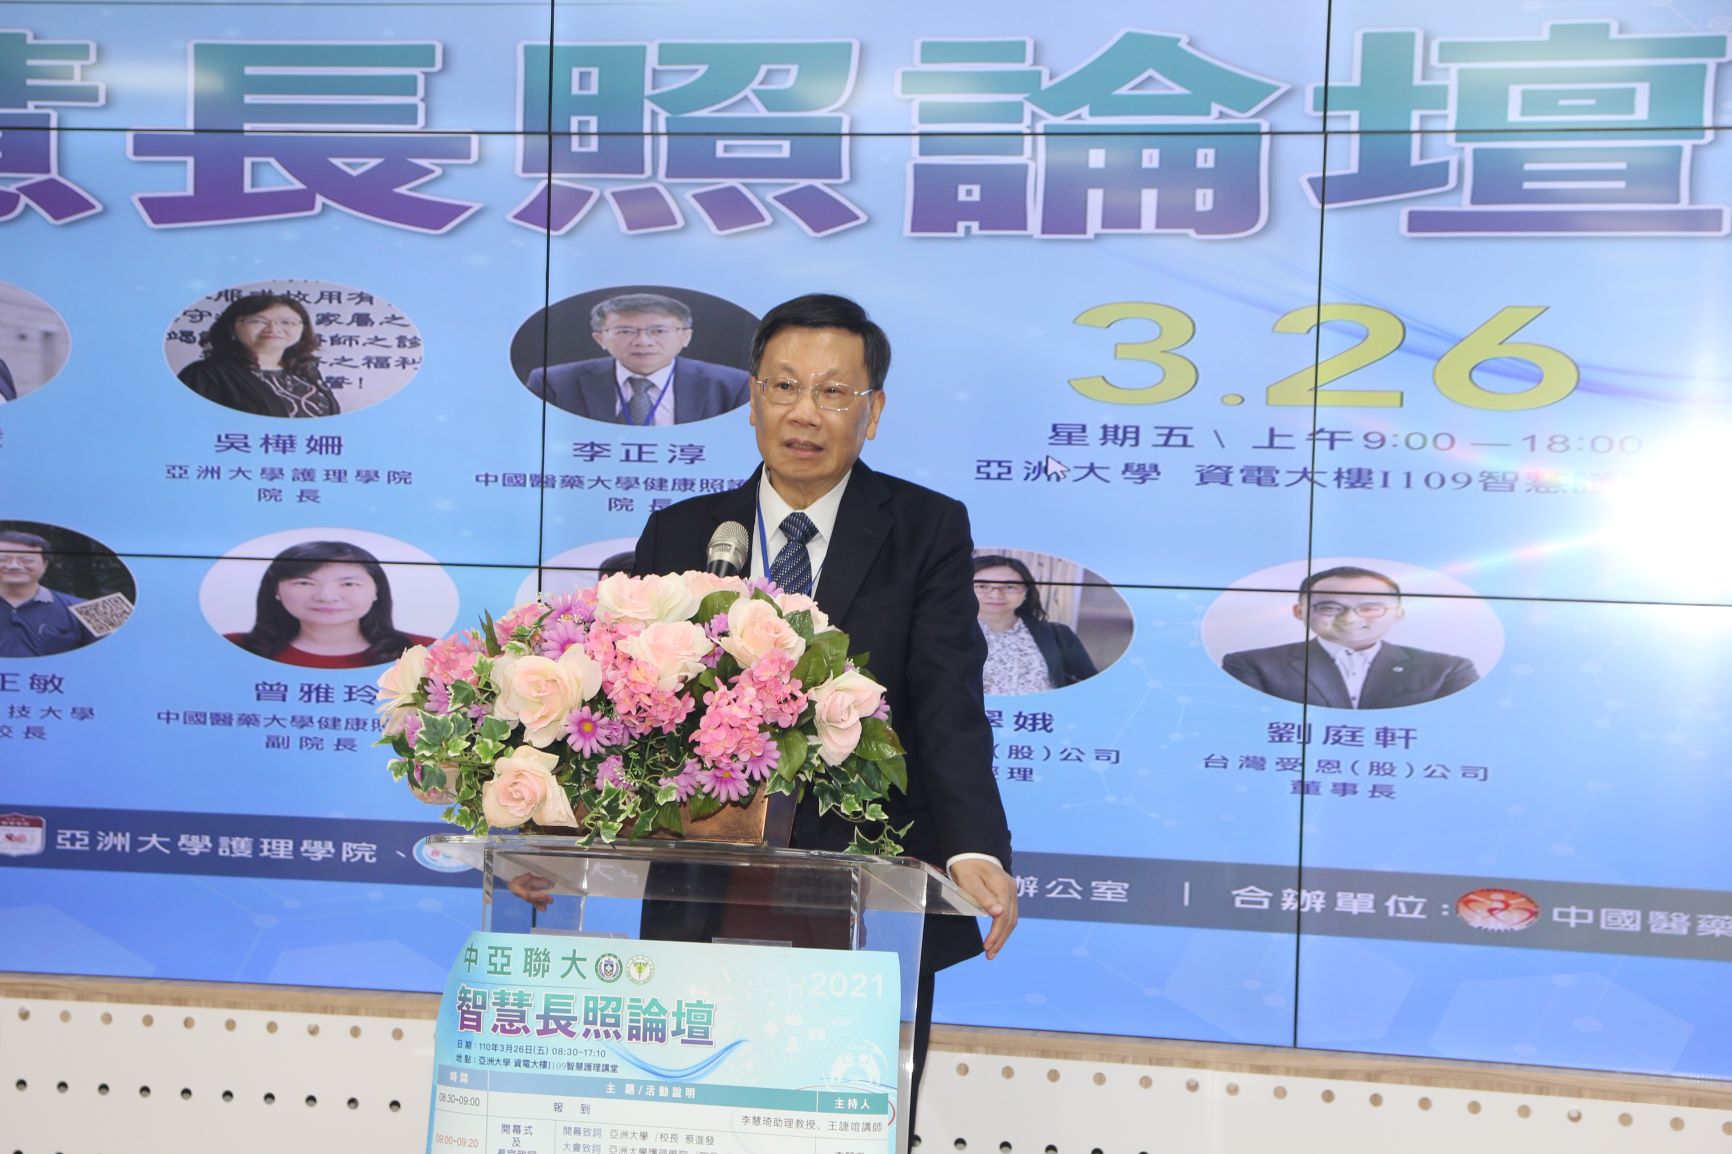 亞大校長蔡進發表示，人口老化是台灣面臨很嚴重的問題，希望與會專家學者分享各自經驗，讓台灣長照更完善。